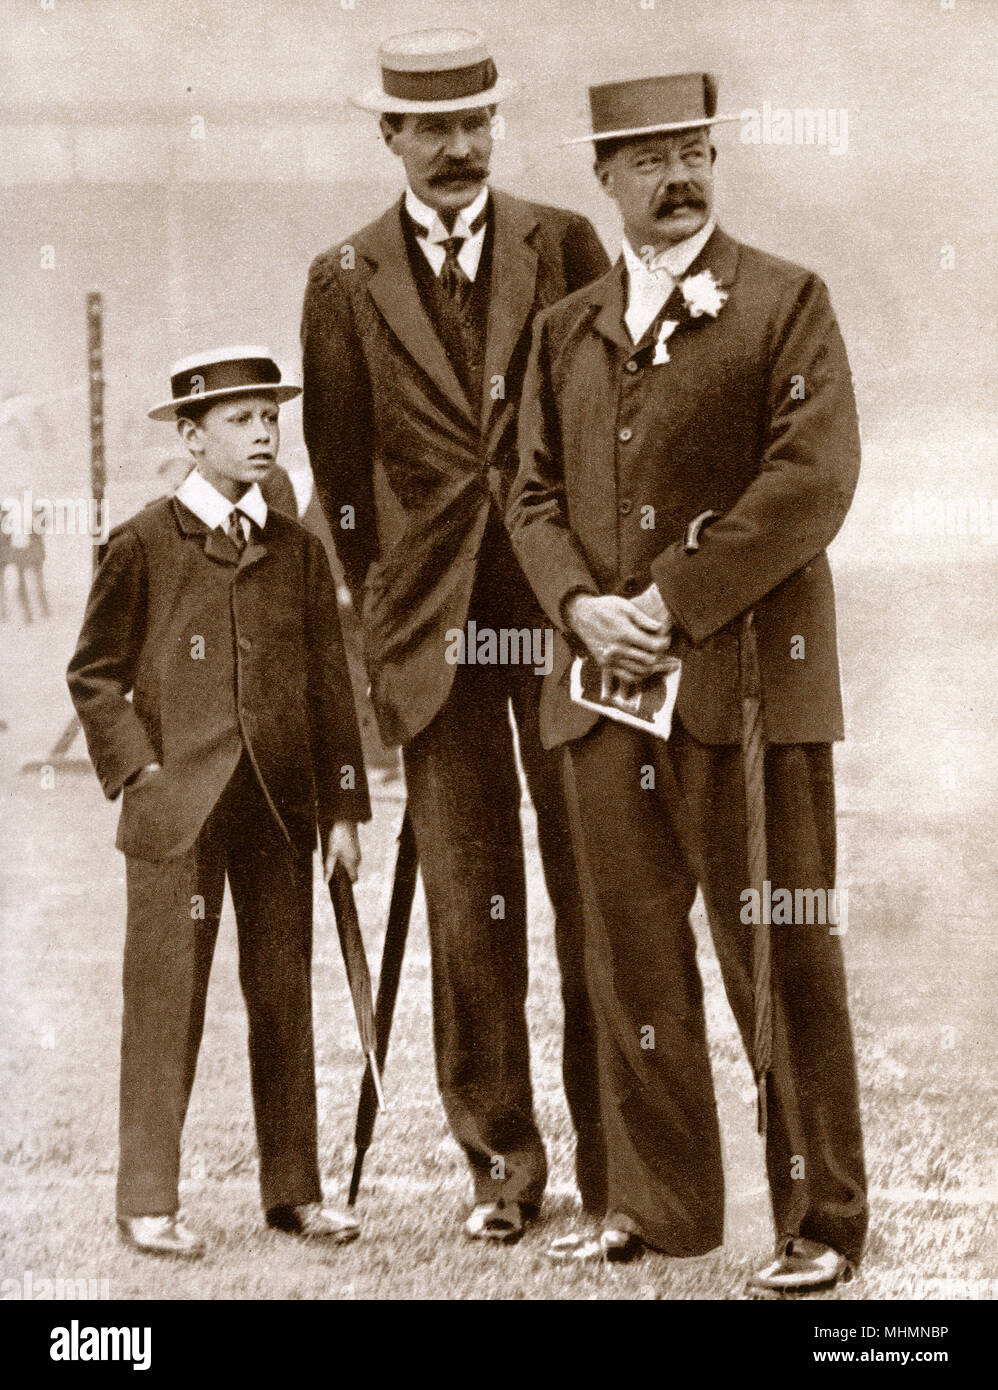 El Príncipe Alberto, duque de York (1895-1952) (posteriormente el Rey George VI) - Su tutor Señor H. P. Hansell - William Grenfell, 1er Barón Desborough (1855-1945) - fotos de aficionados en el encuentro de la Asociación de Atletismo en Londres en 1908. Fecha: 1908 Foto de stock